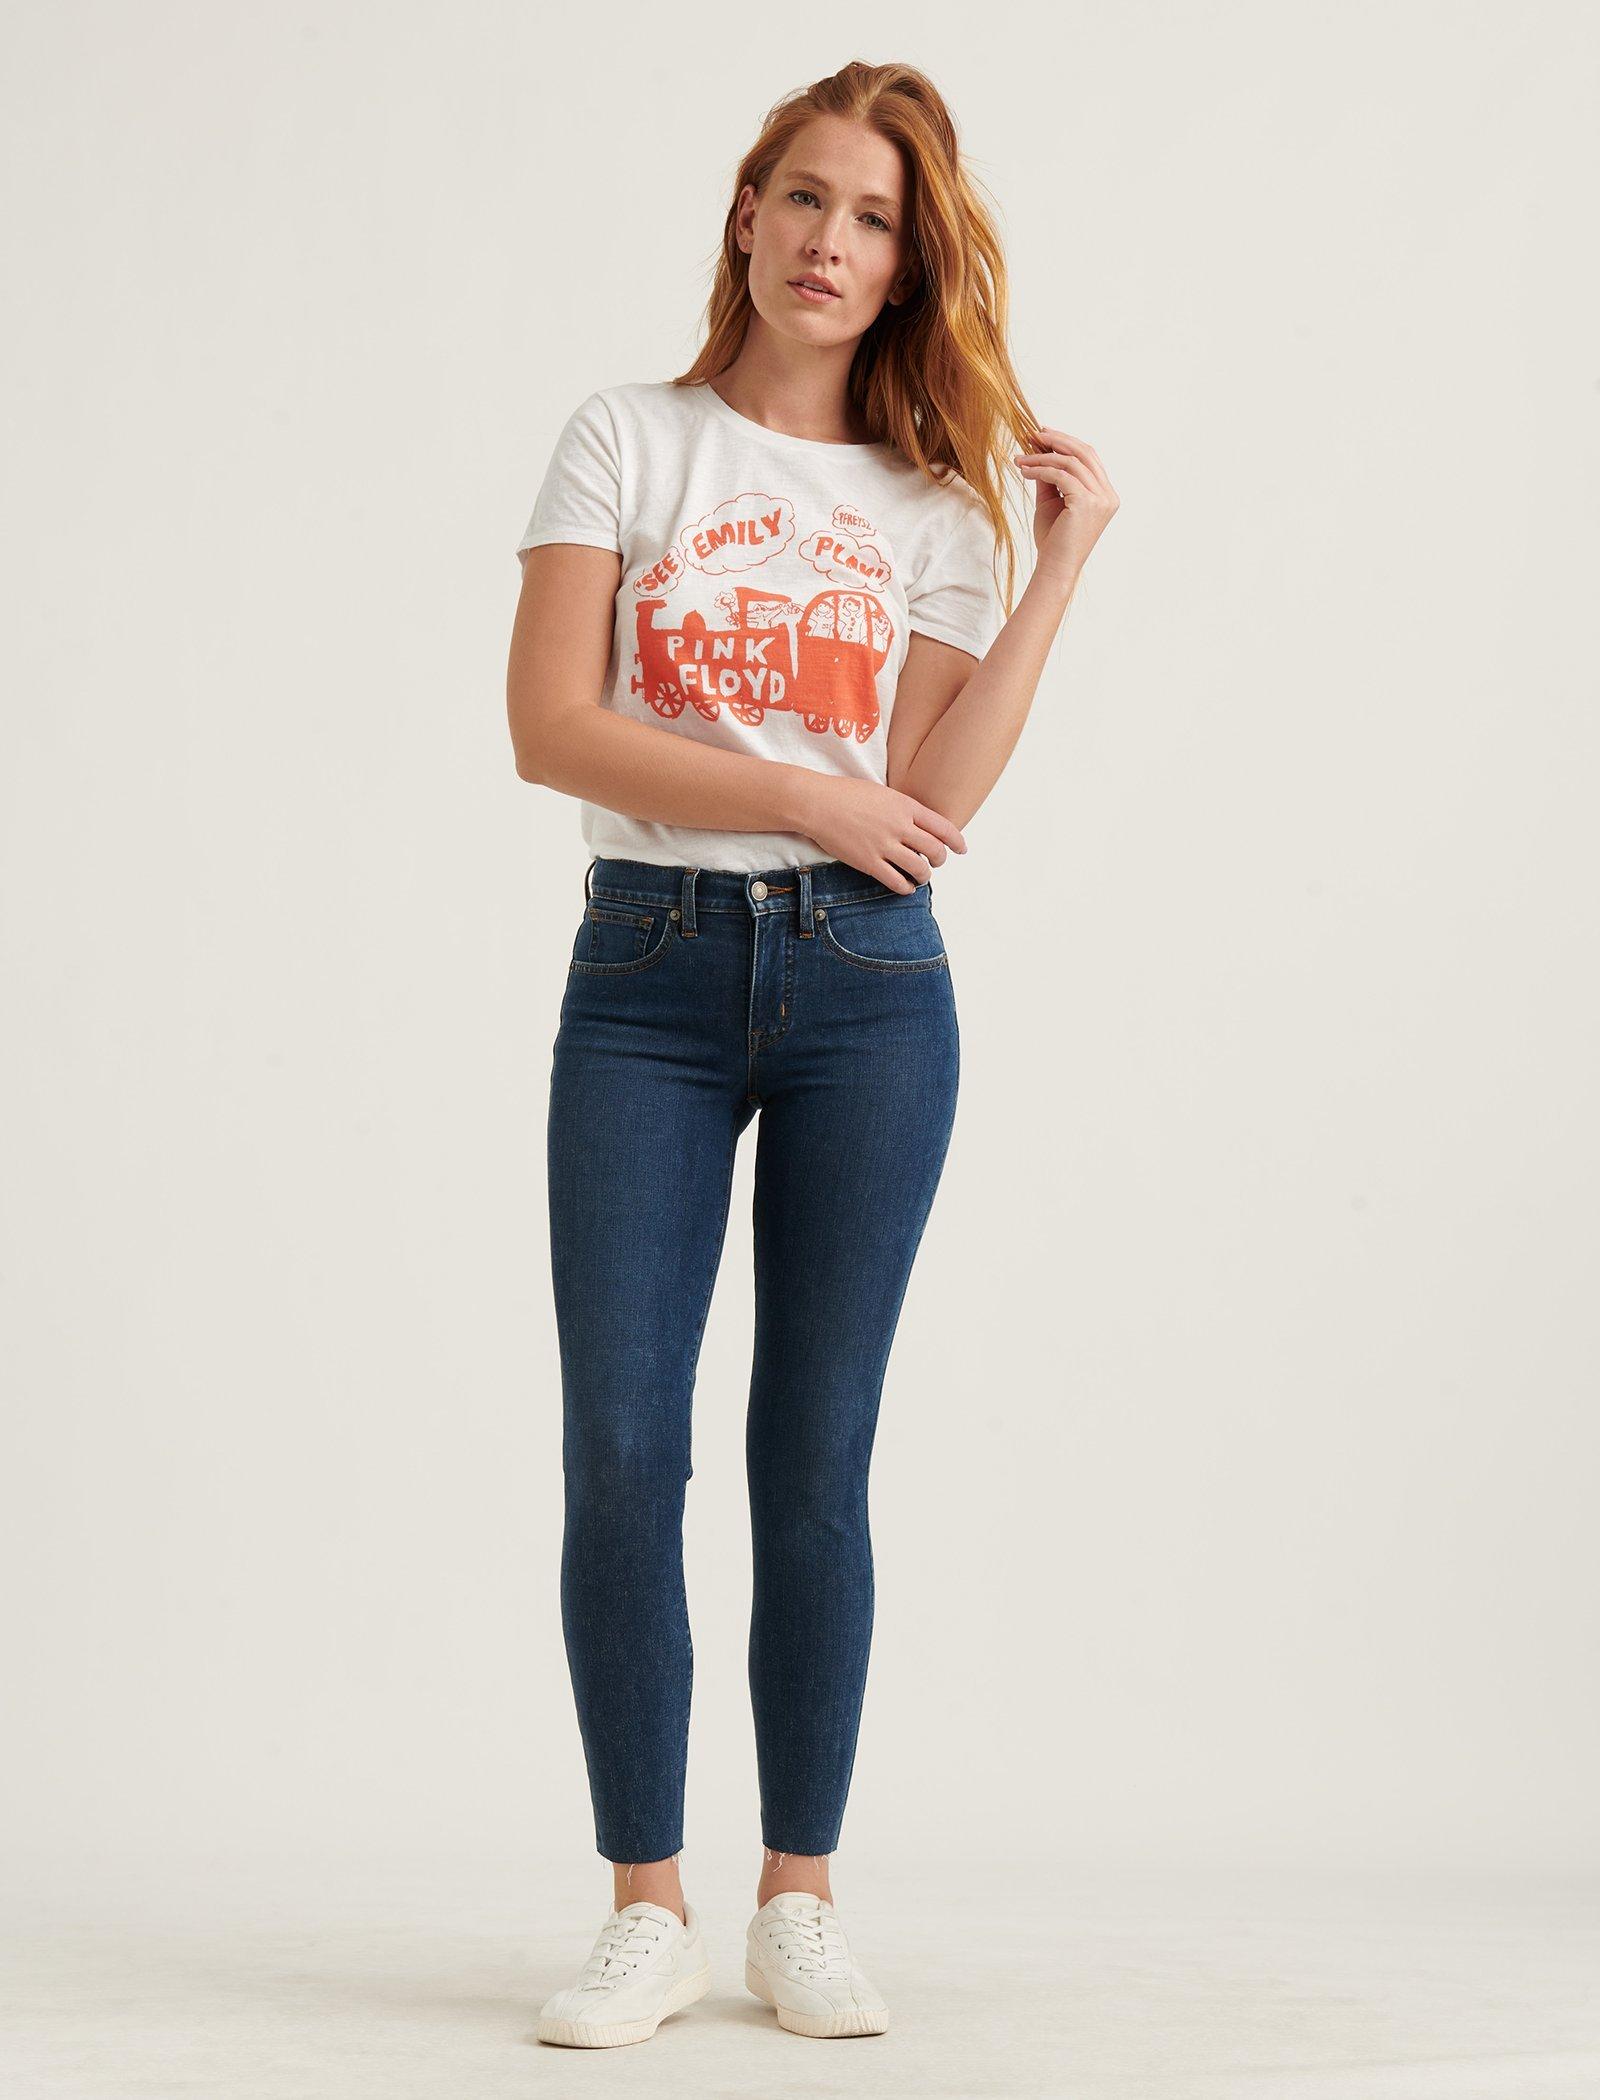 women's jeans on sale